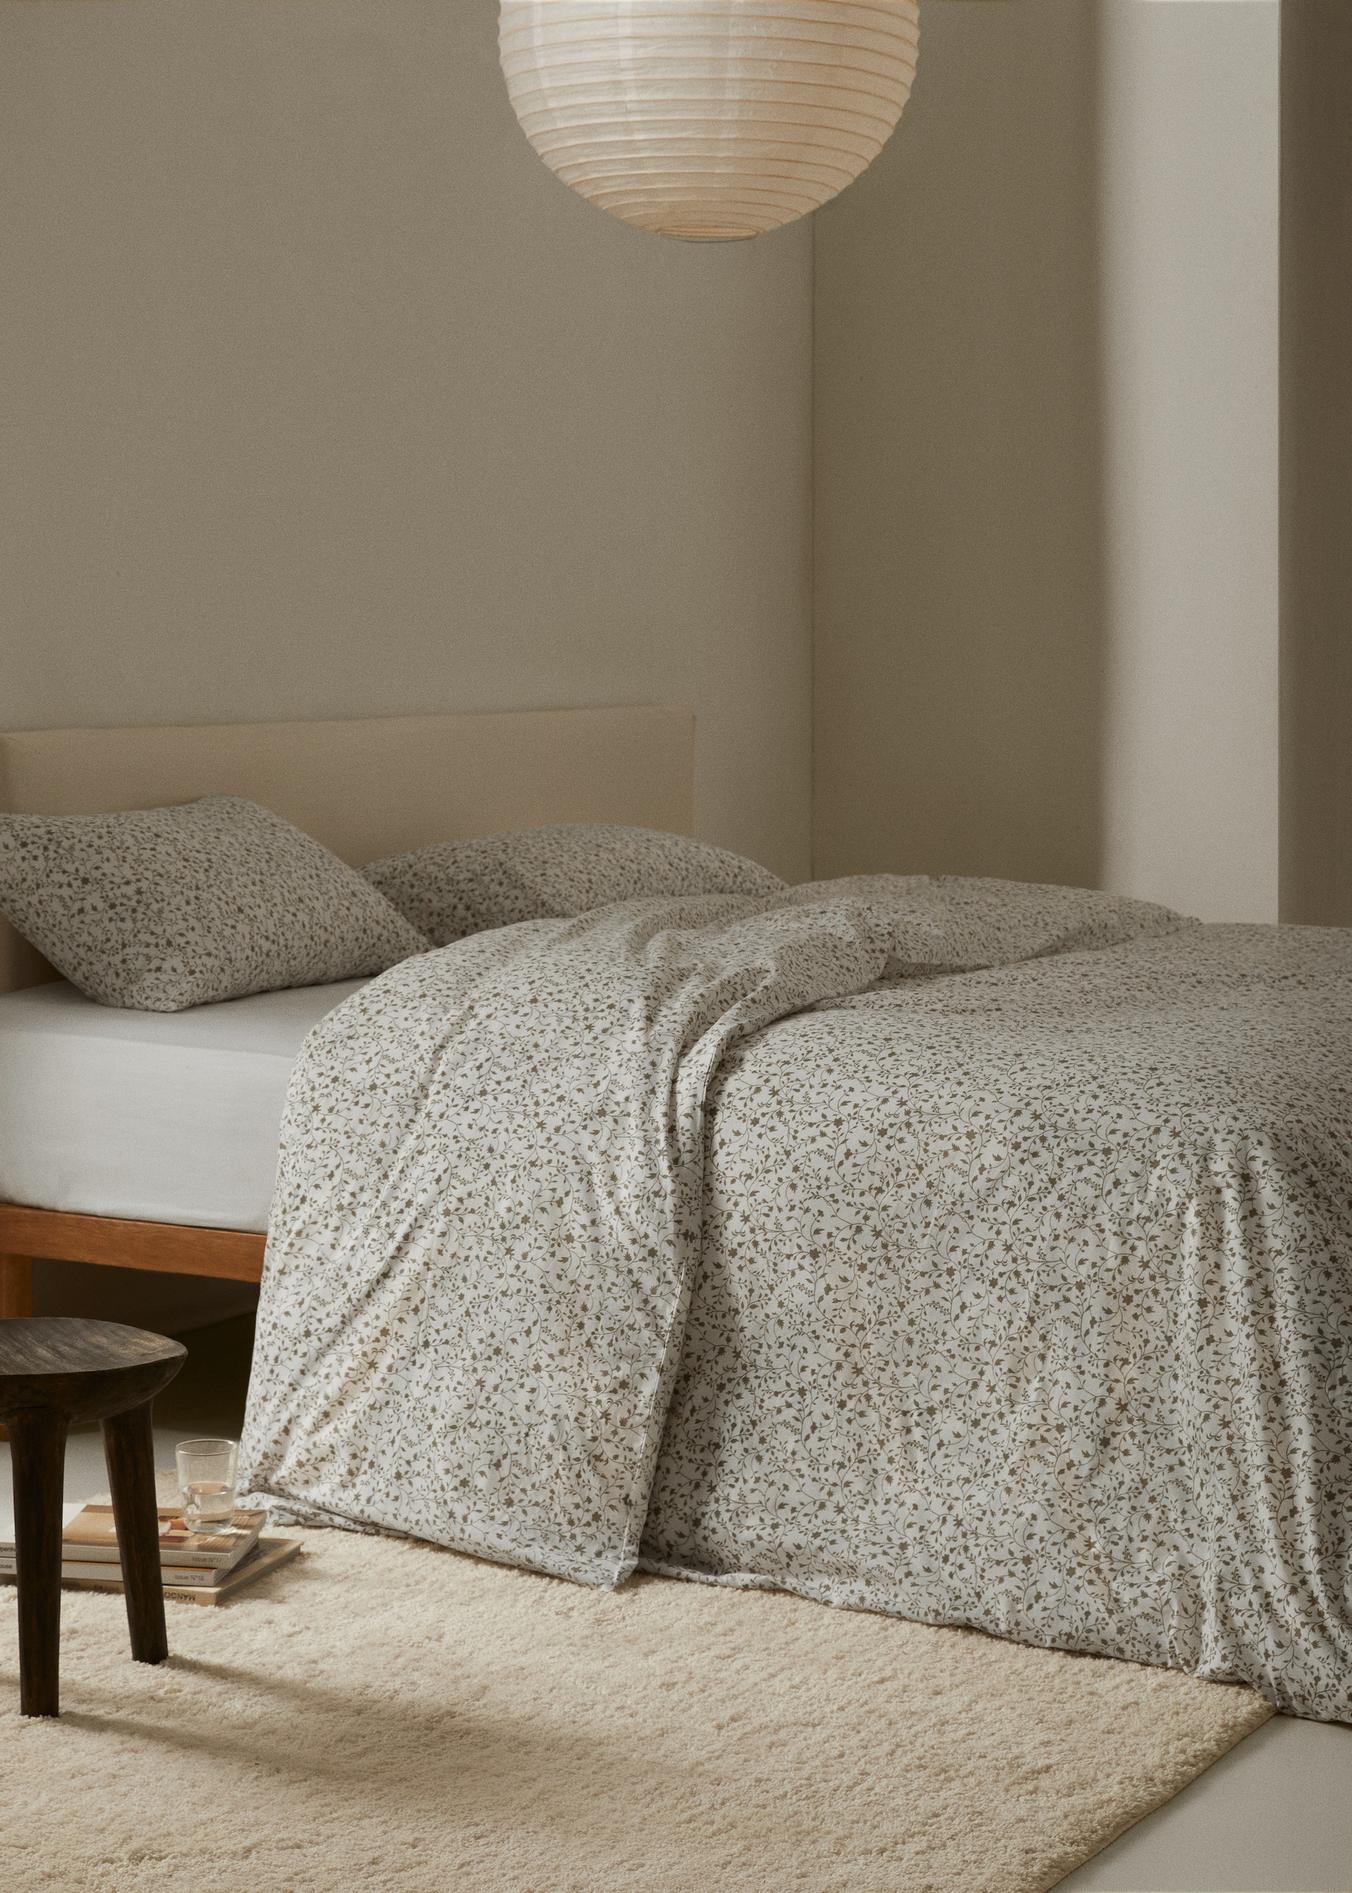 Bettbezug mit Blümchenmuster für 150 cm Bett für 29,99€ in Mango